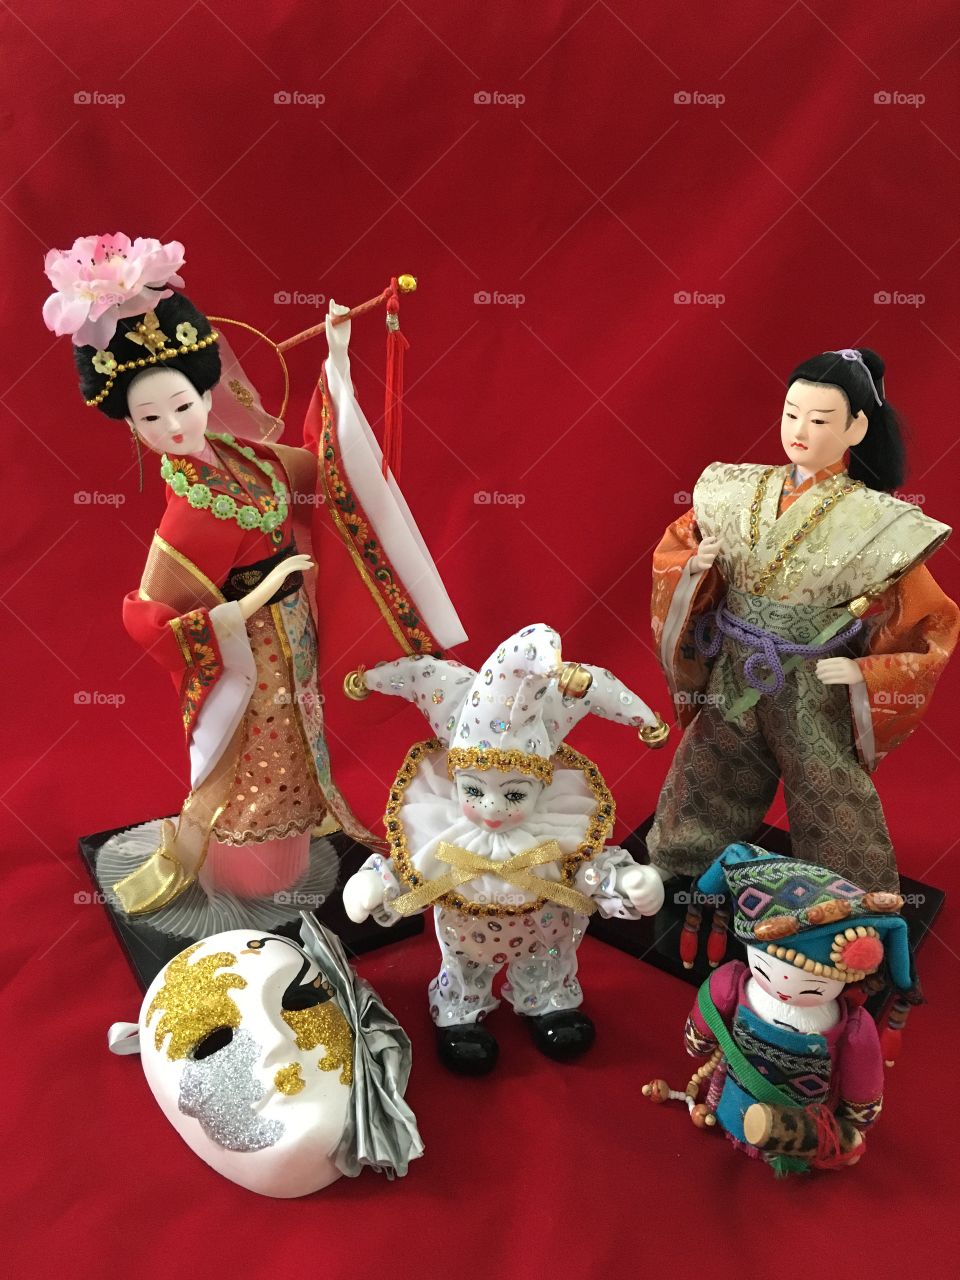 dolls: a geisha, a samurai, a joker, a Japanese girl. mask. theater.